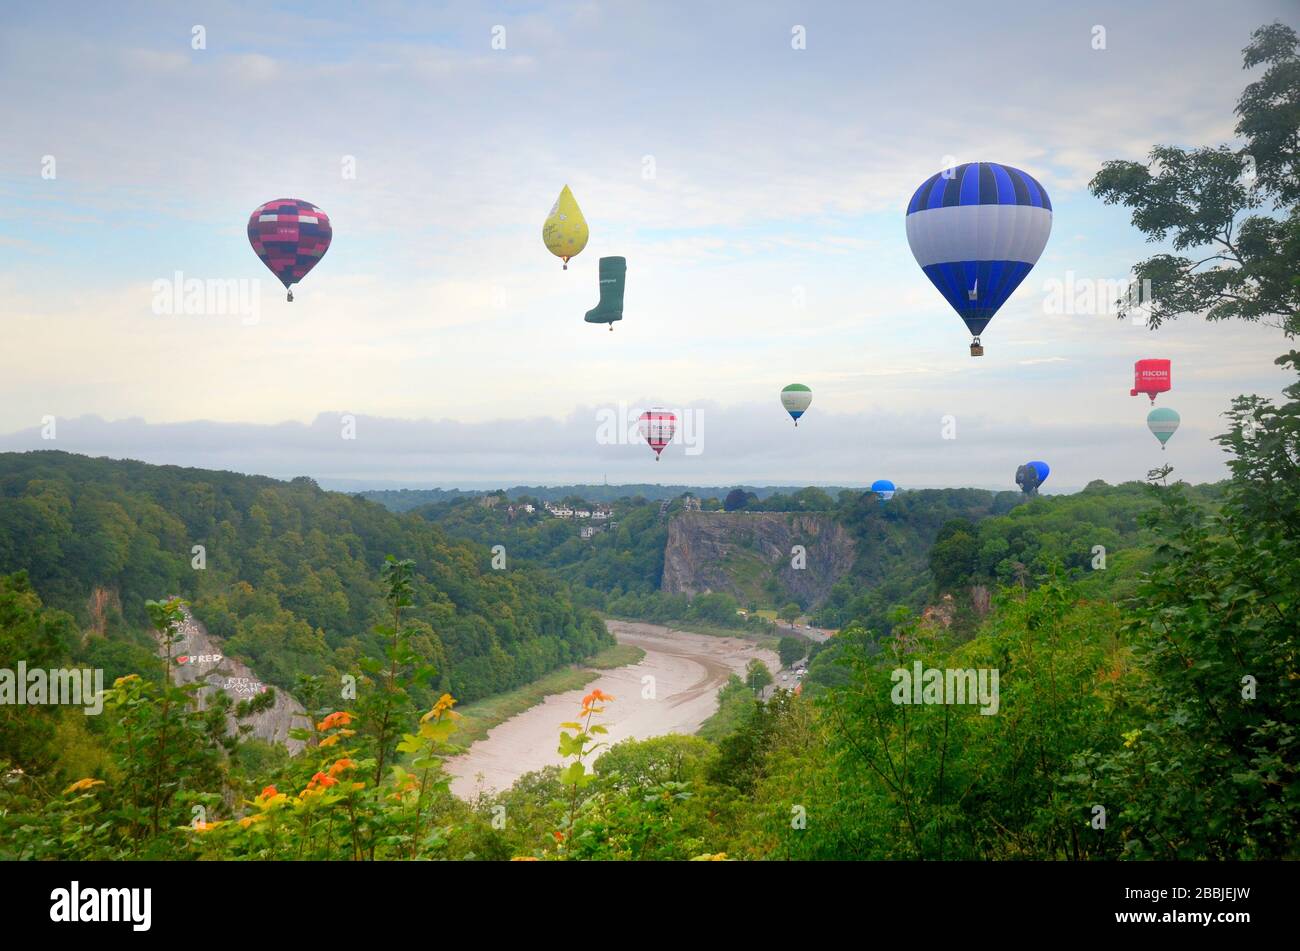 Bristol ballon festival 2019 - globos aerostáticos aterrizando después del  vuelo. - clifton Fotografía de stock - Alamy